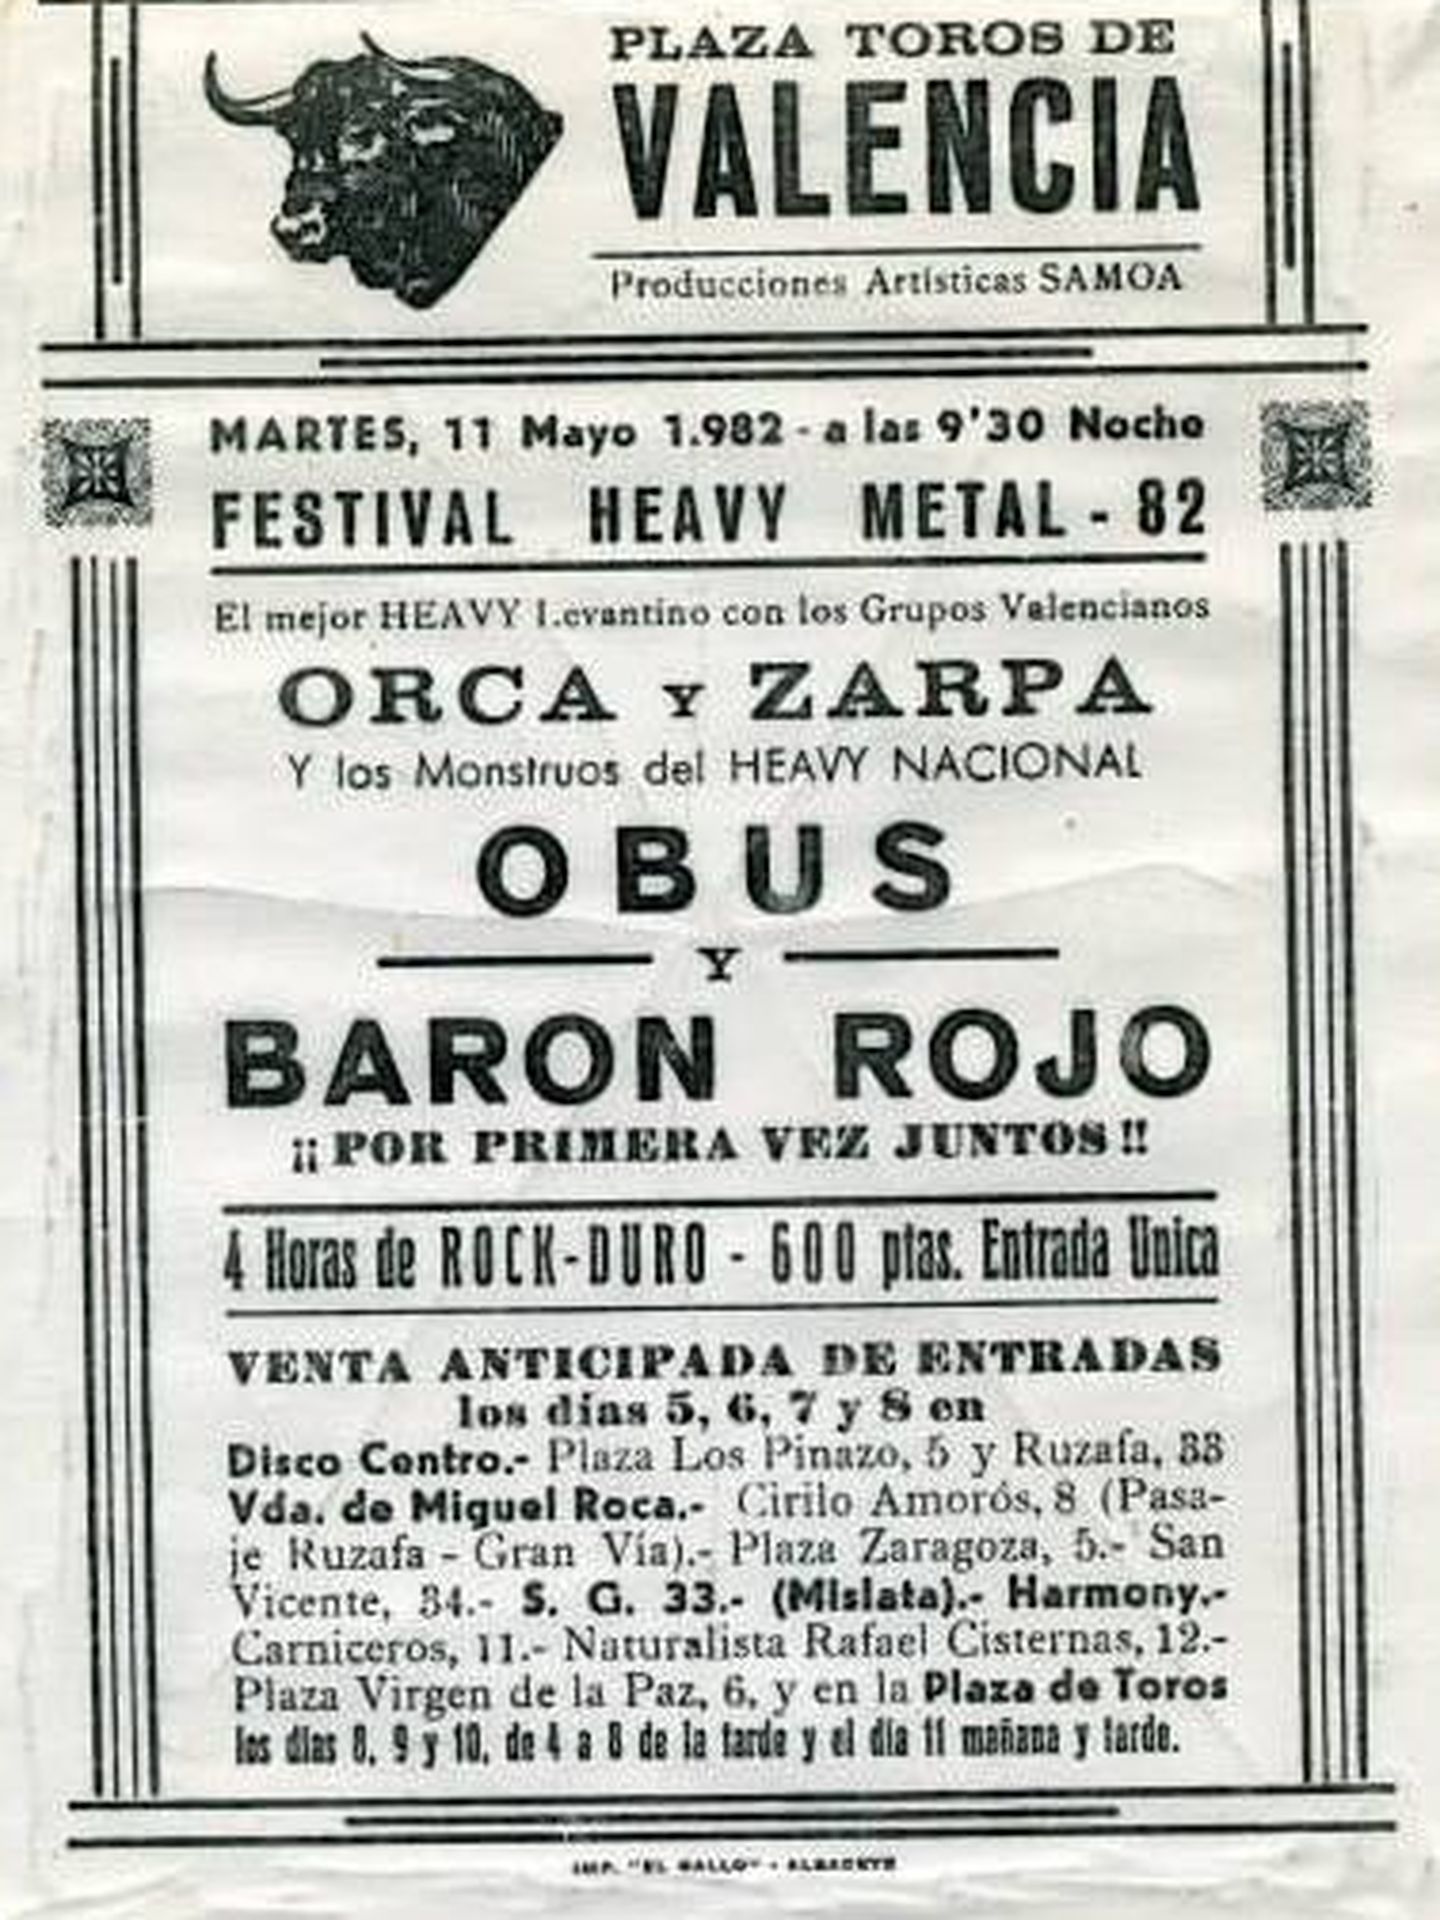 Zarpa con Obús y Barón Rojo en Plaza de Toros de Valencia 1982. (Cedida)